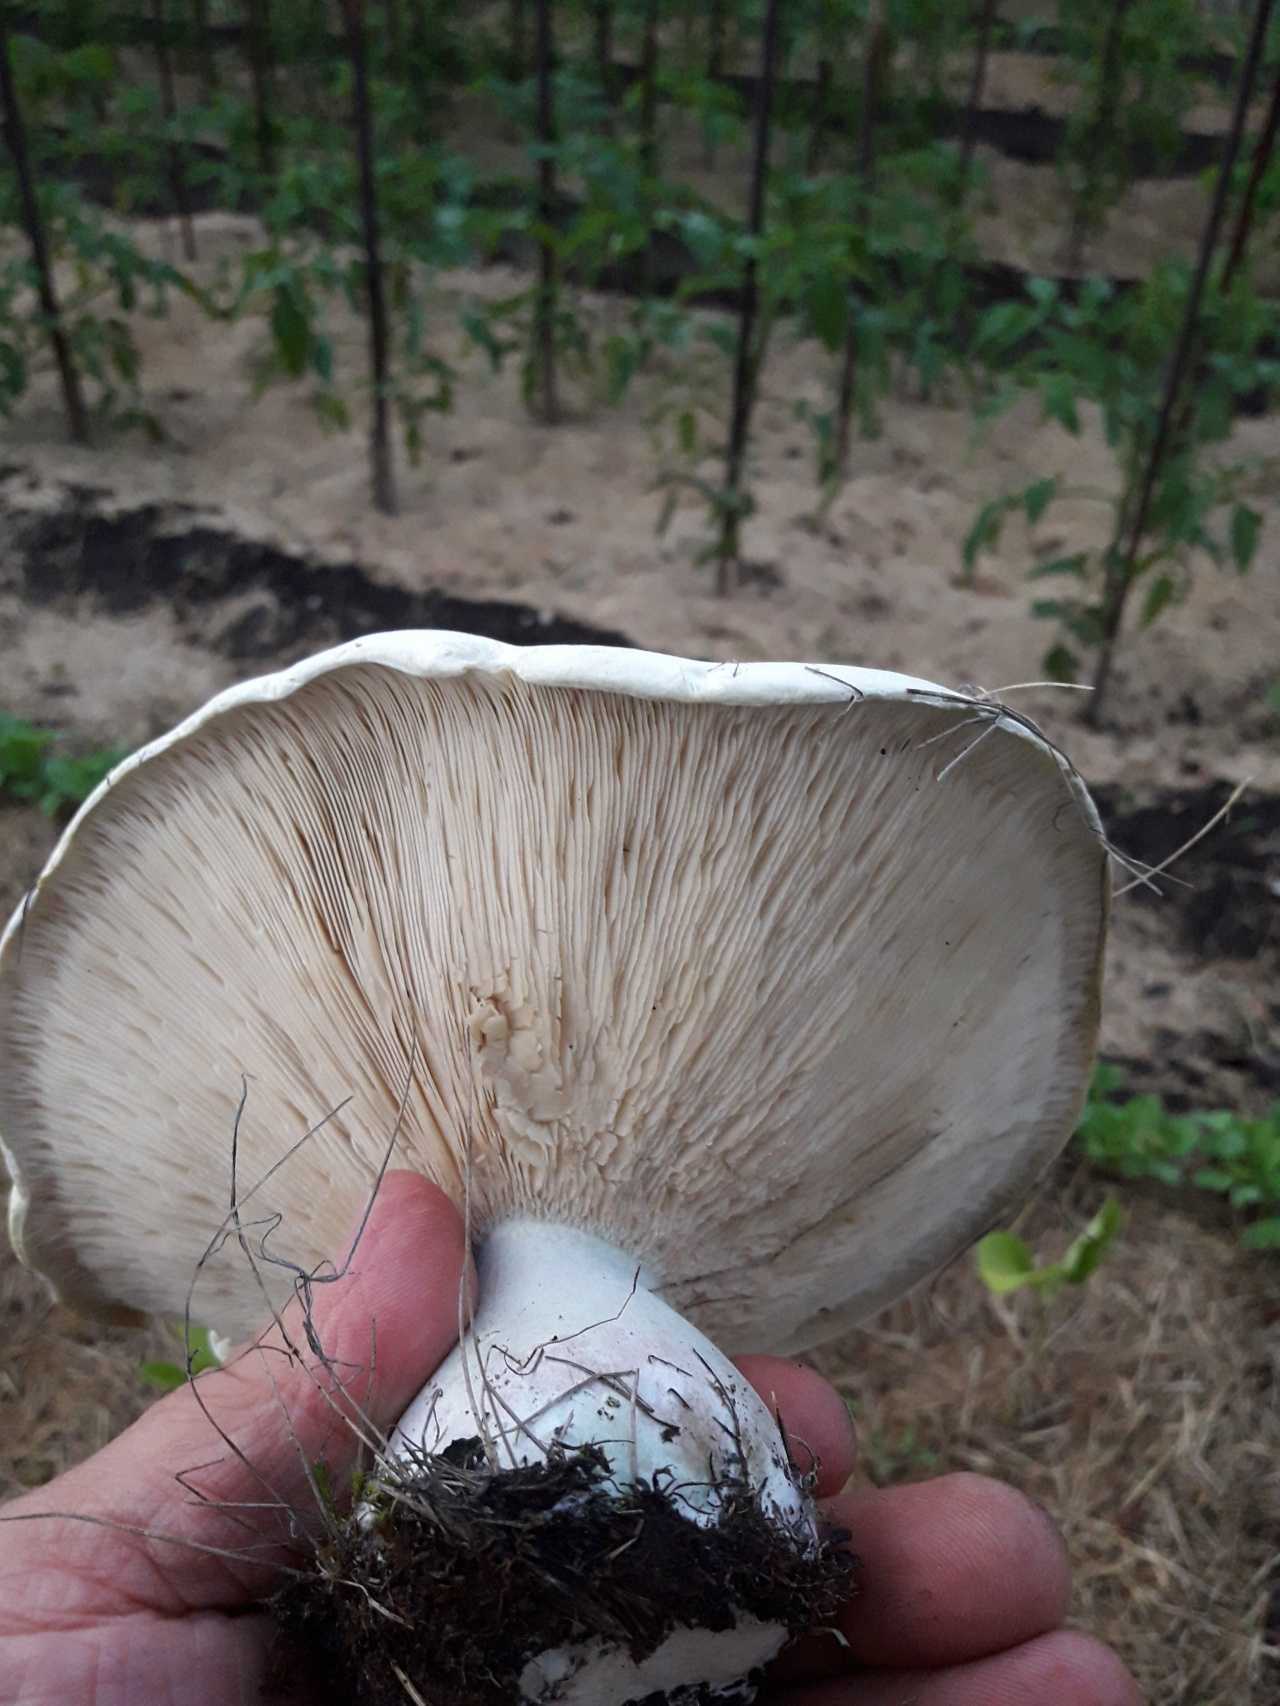 Ложная свинушка: руководство по определению грибов с фото и описанием